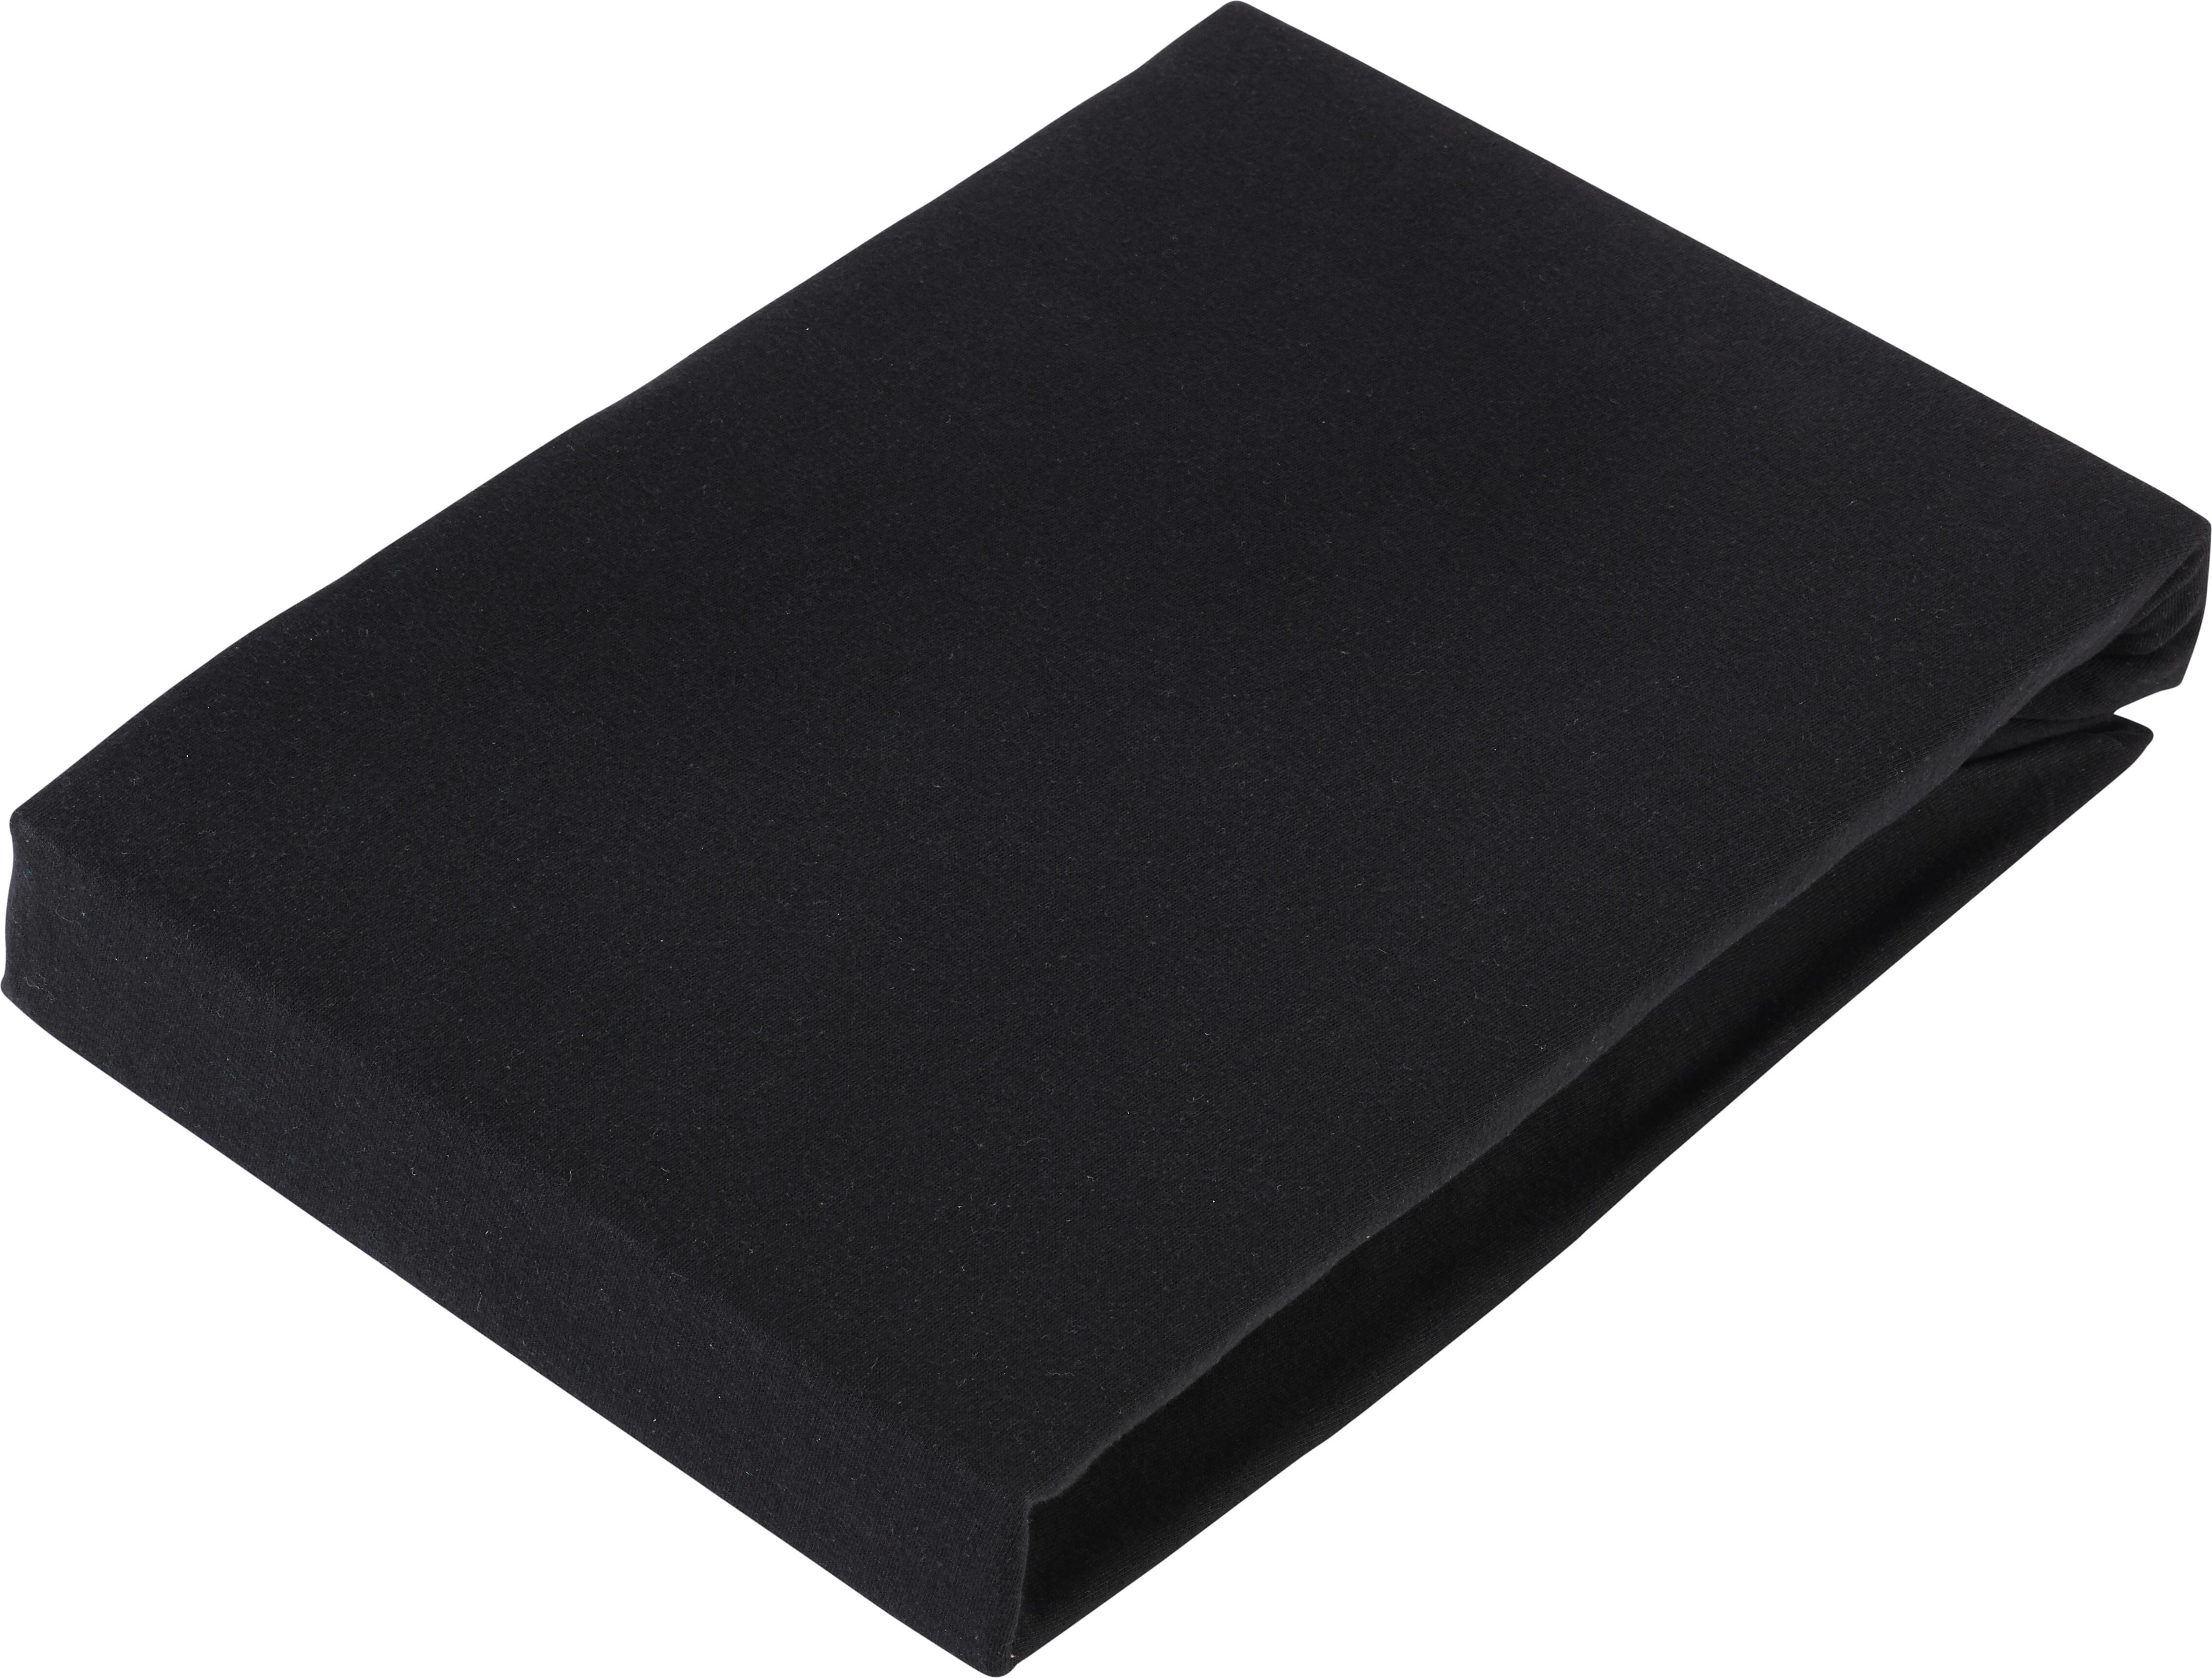 Napínacia Plachta Basic, 180/200cm, Čierna - čierna, textil (180/200cm) - Modern Living